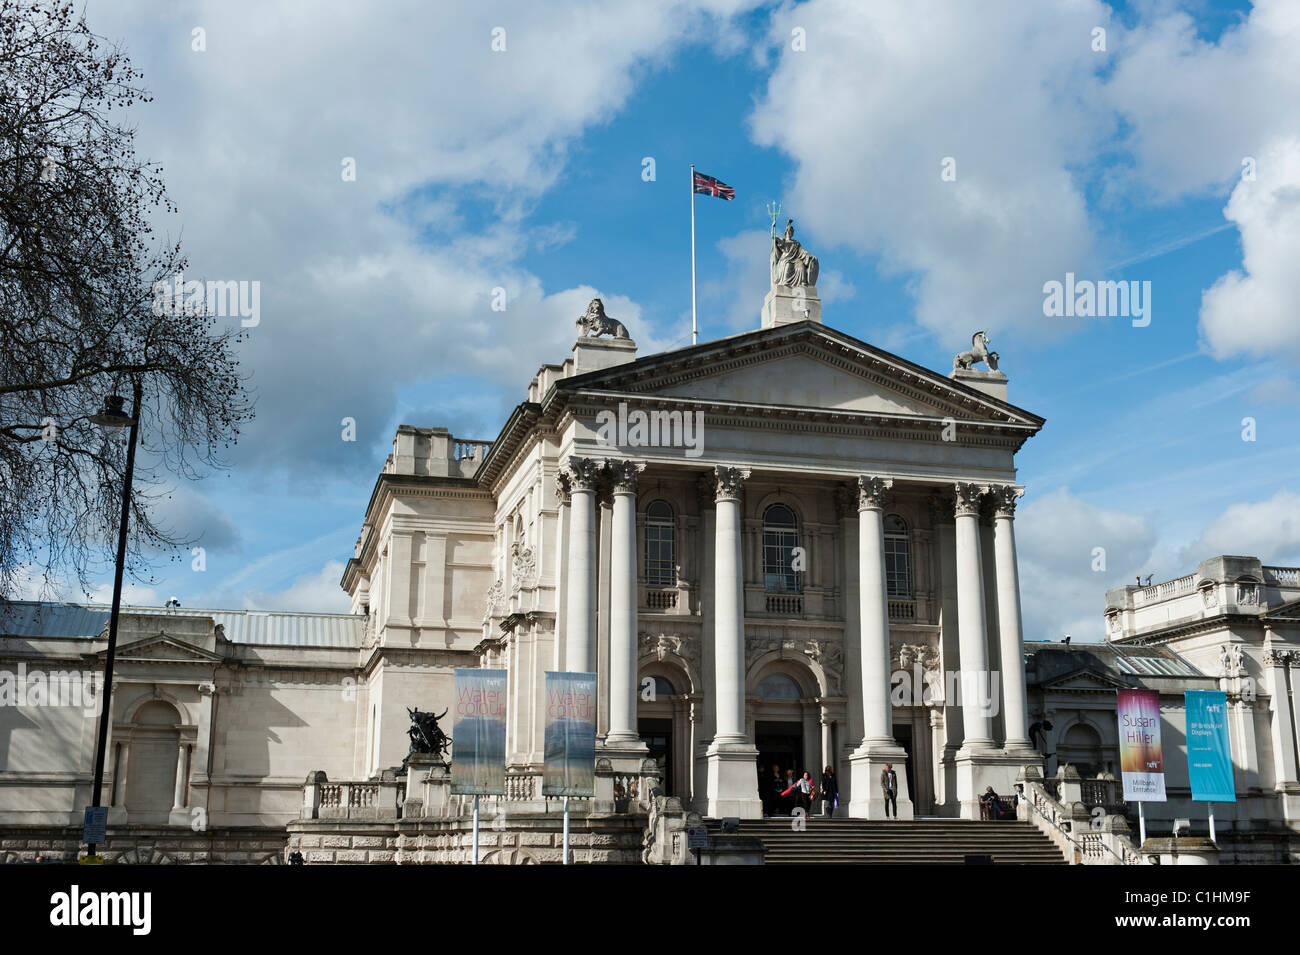 Tate Britain, art gallery on Millbank, London Stock Photo